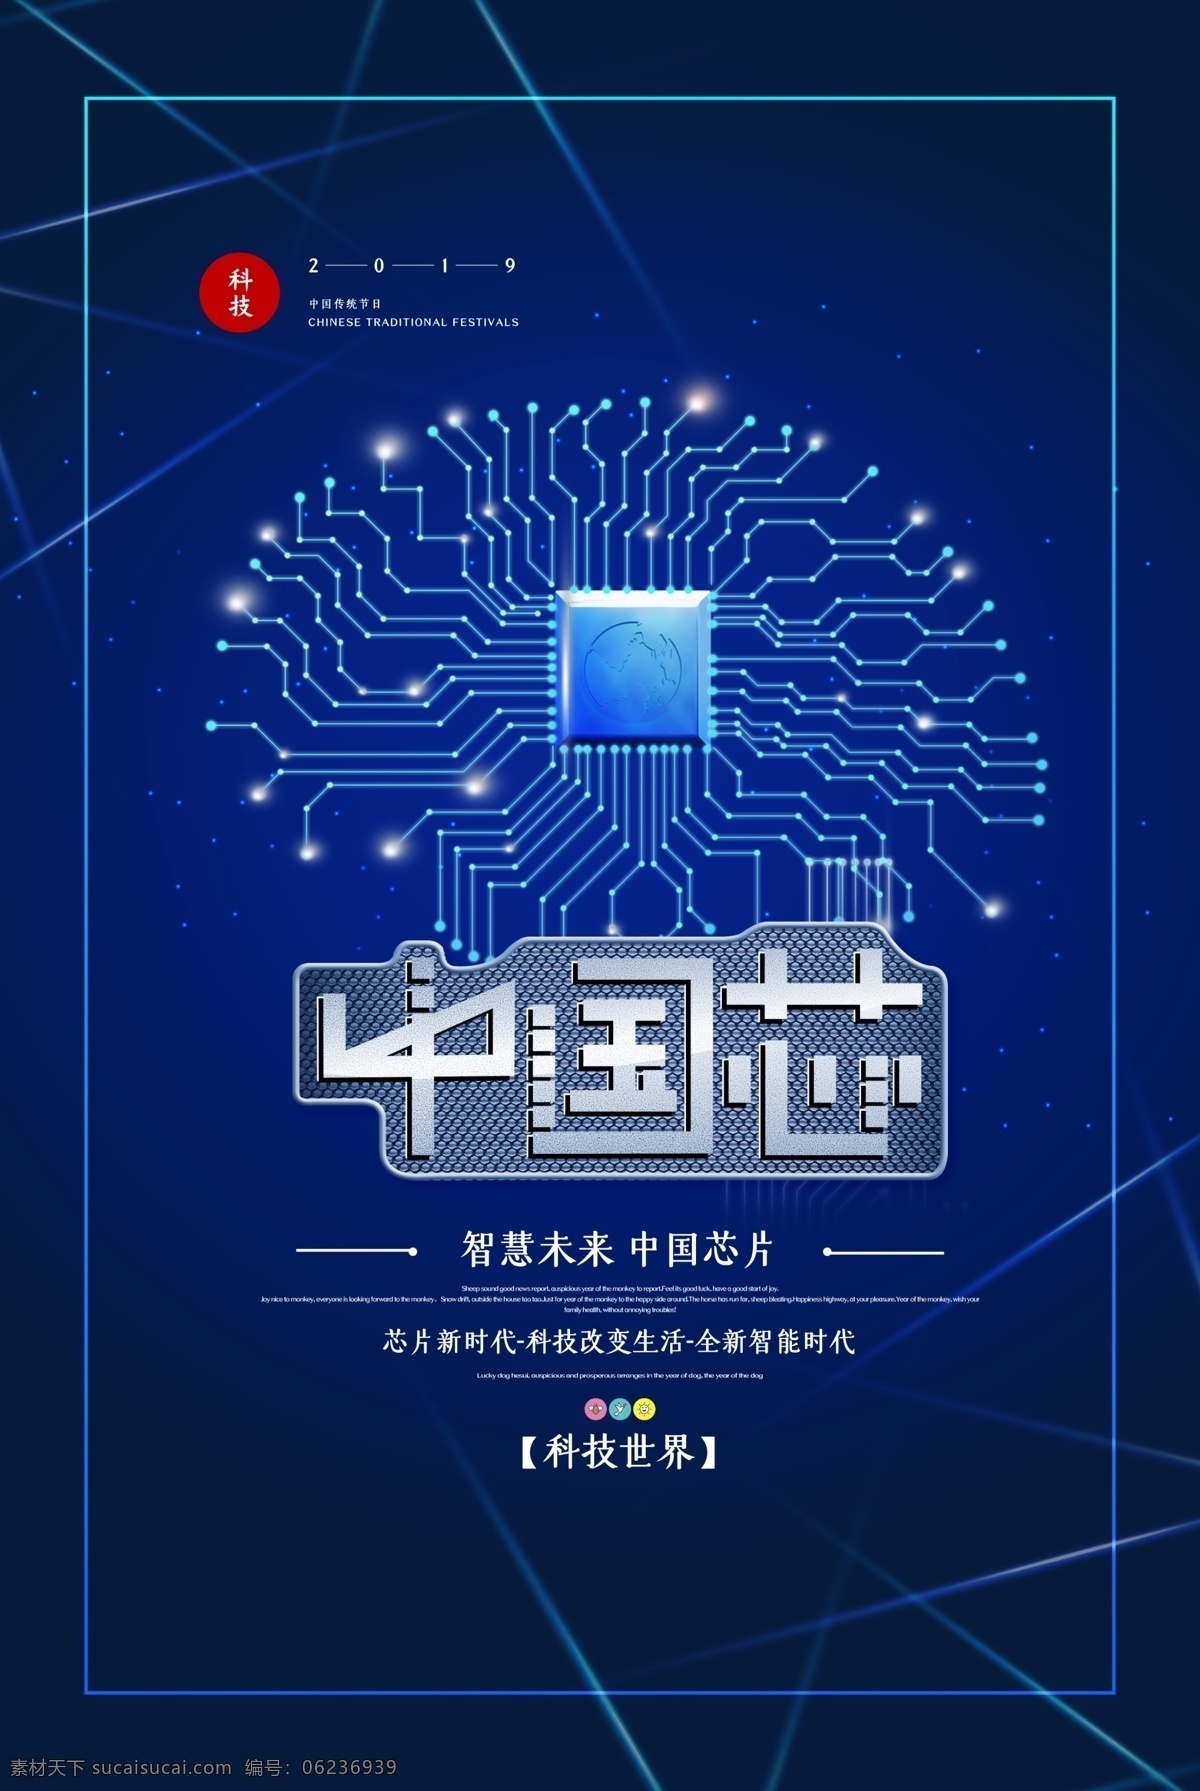 芯片 cpu 科技 电子 智能 中国制造 中国芯片 手机芯片 中兴 打造中国芯 中国梦 实现中国梦 芯片制造 电子产品 核心技术 芯片科技